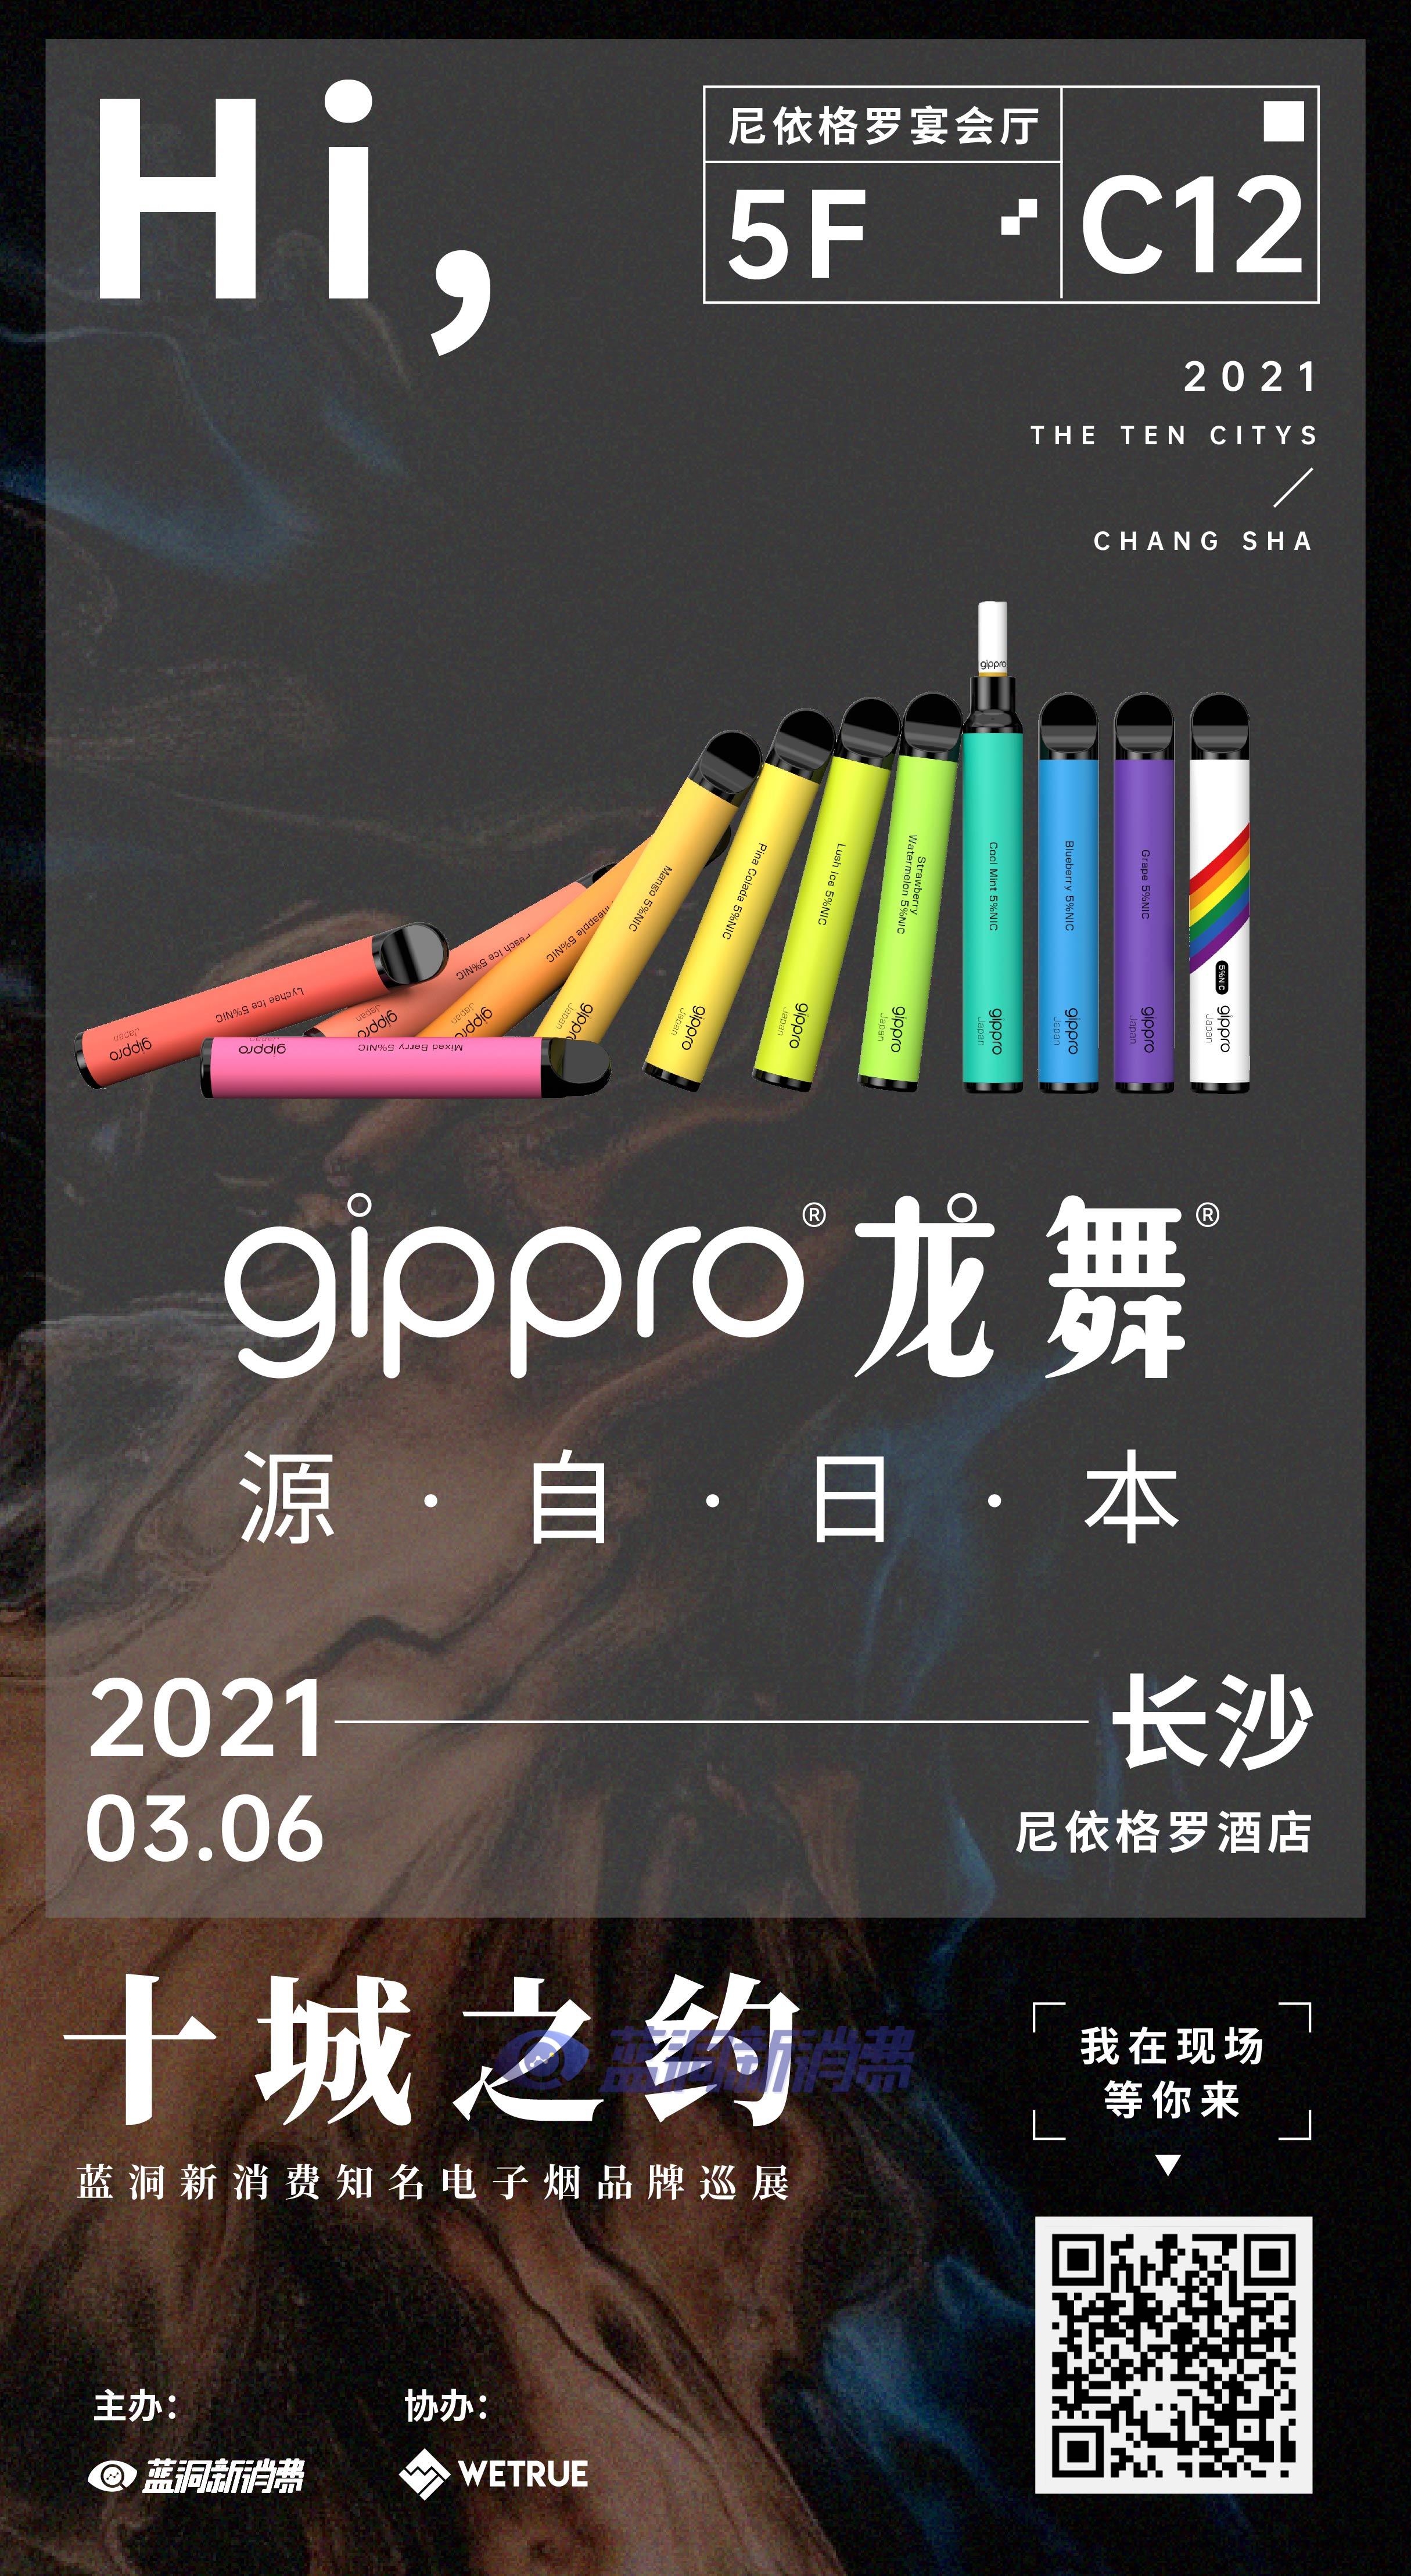 蓝洞电子烟巡展之长沙站品牌巡礼:gippro龙舞电子烟